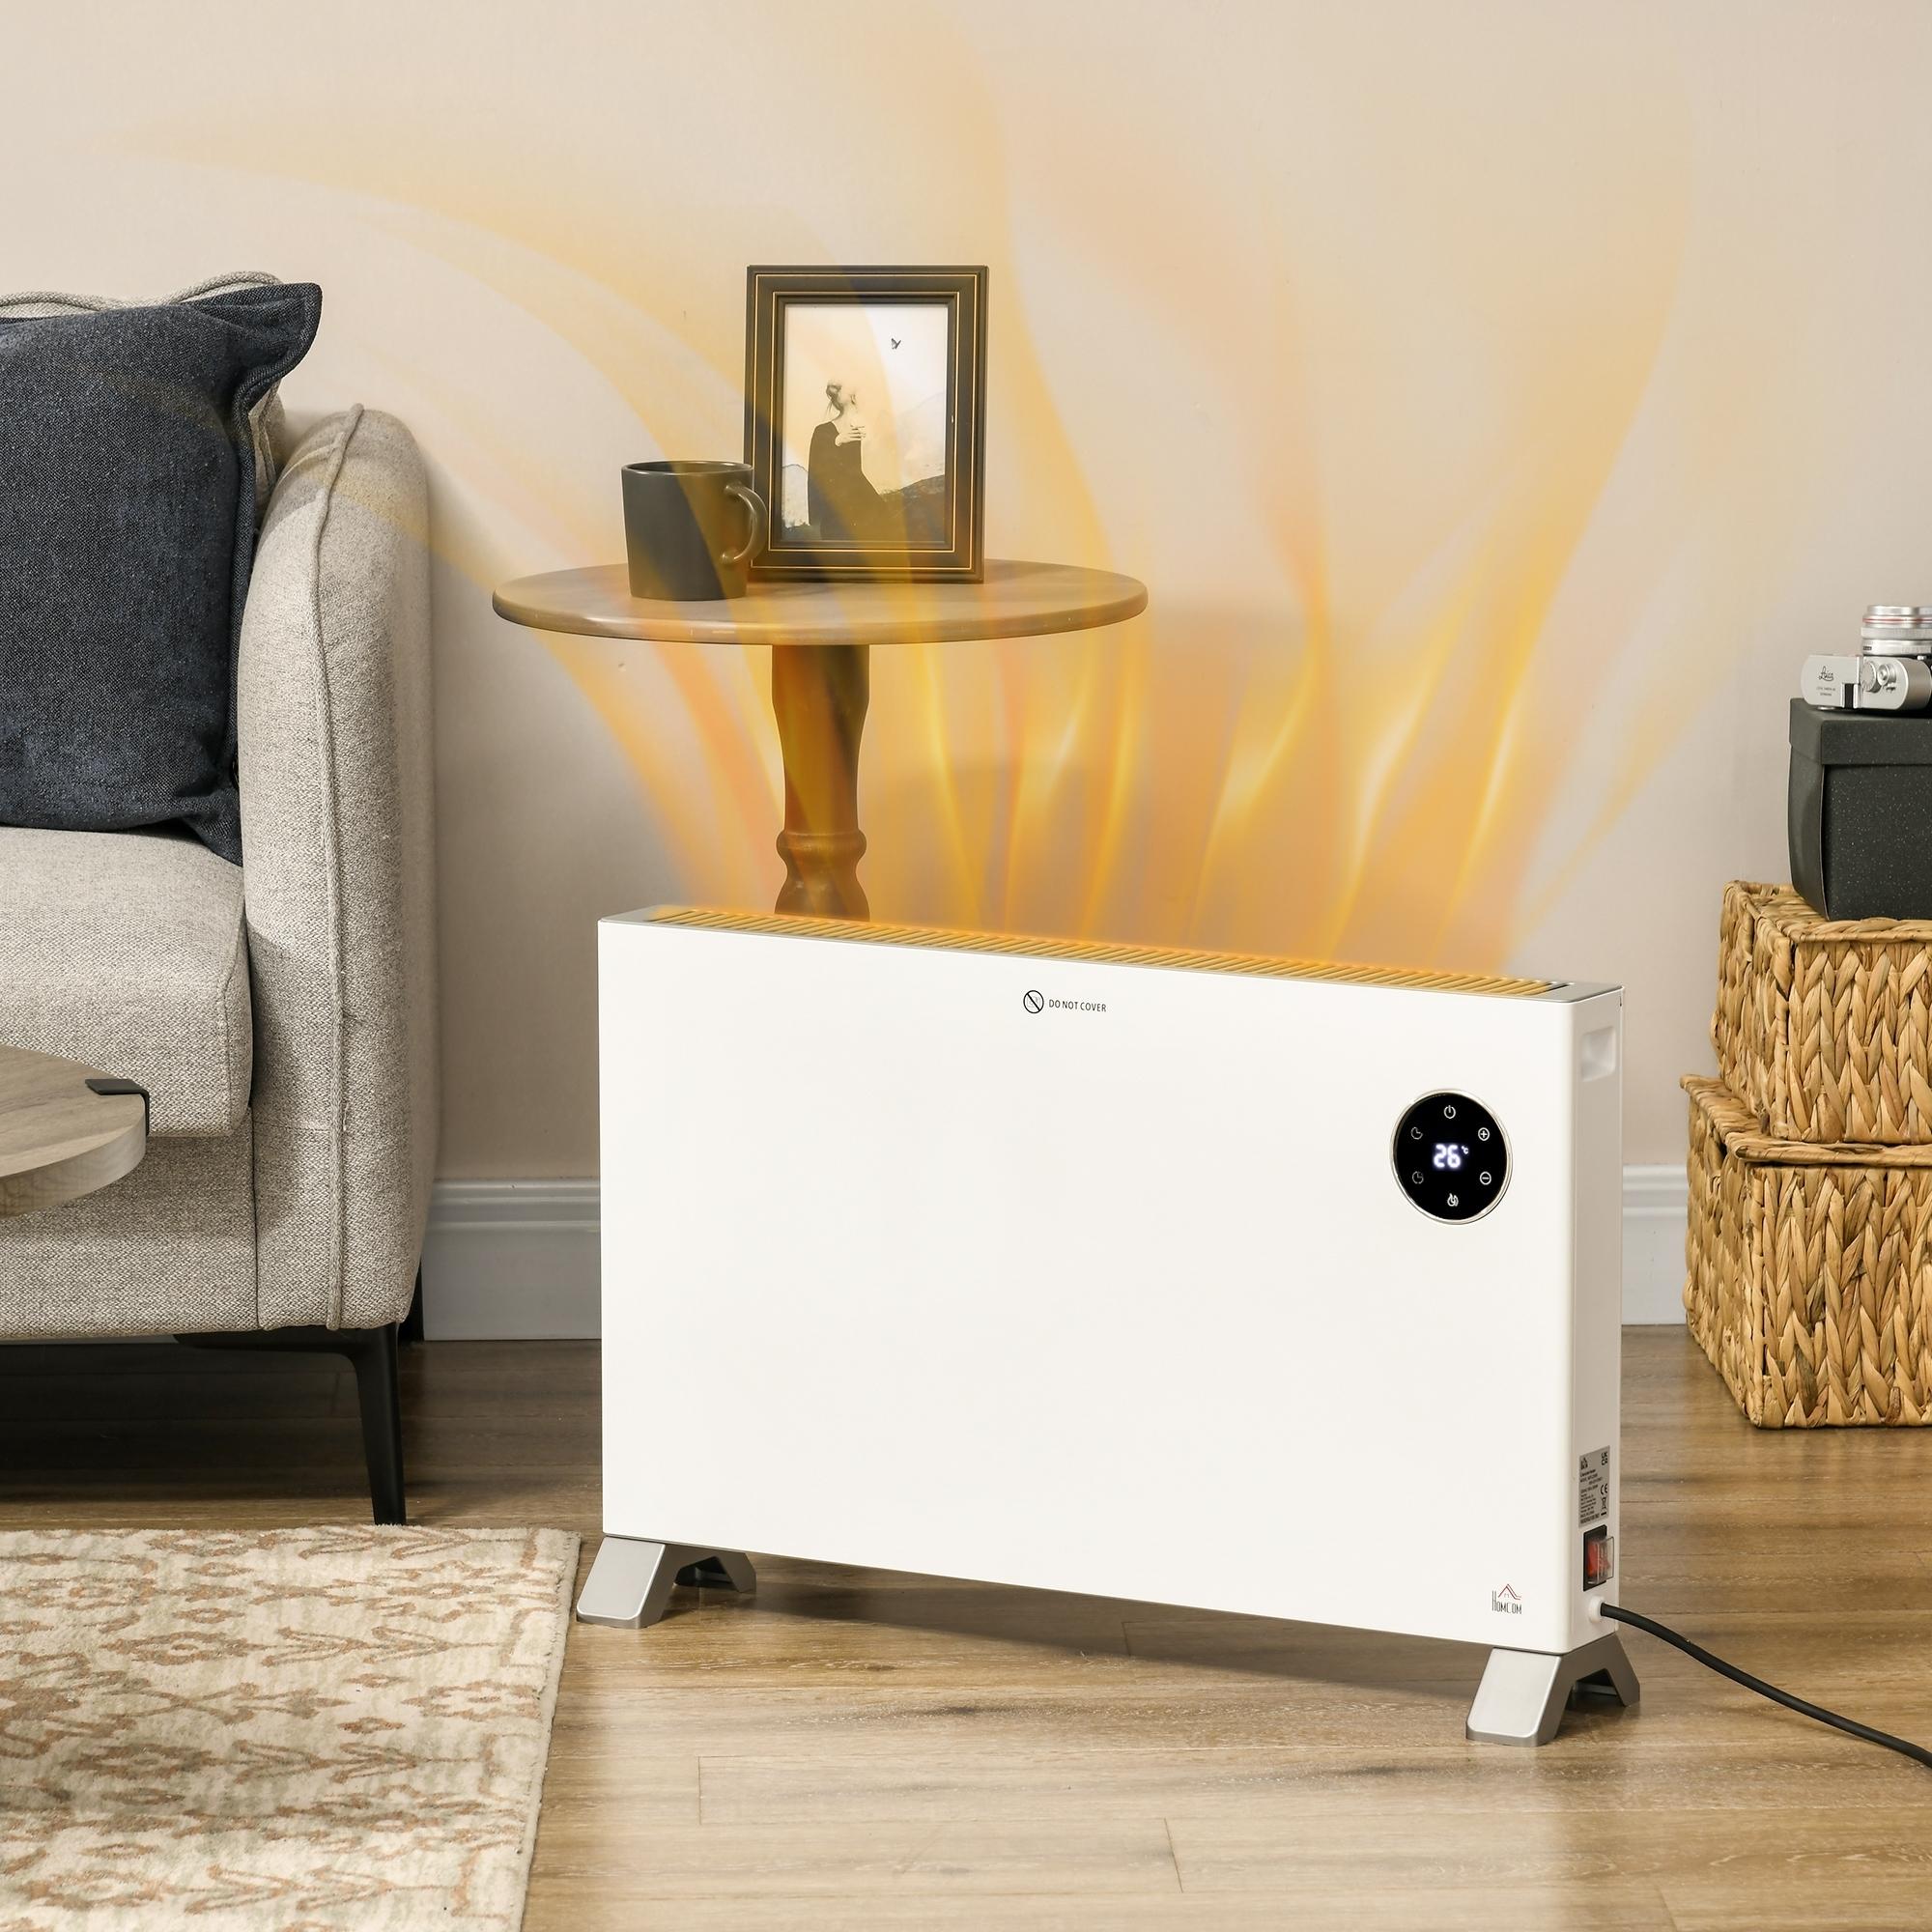 Homcom - Radiateur électrique avec thermostat timer télécommande chauffage  panneau rayonnant écran LED 2000W max. acier alu. blanc